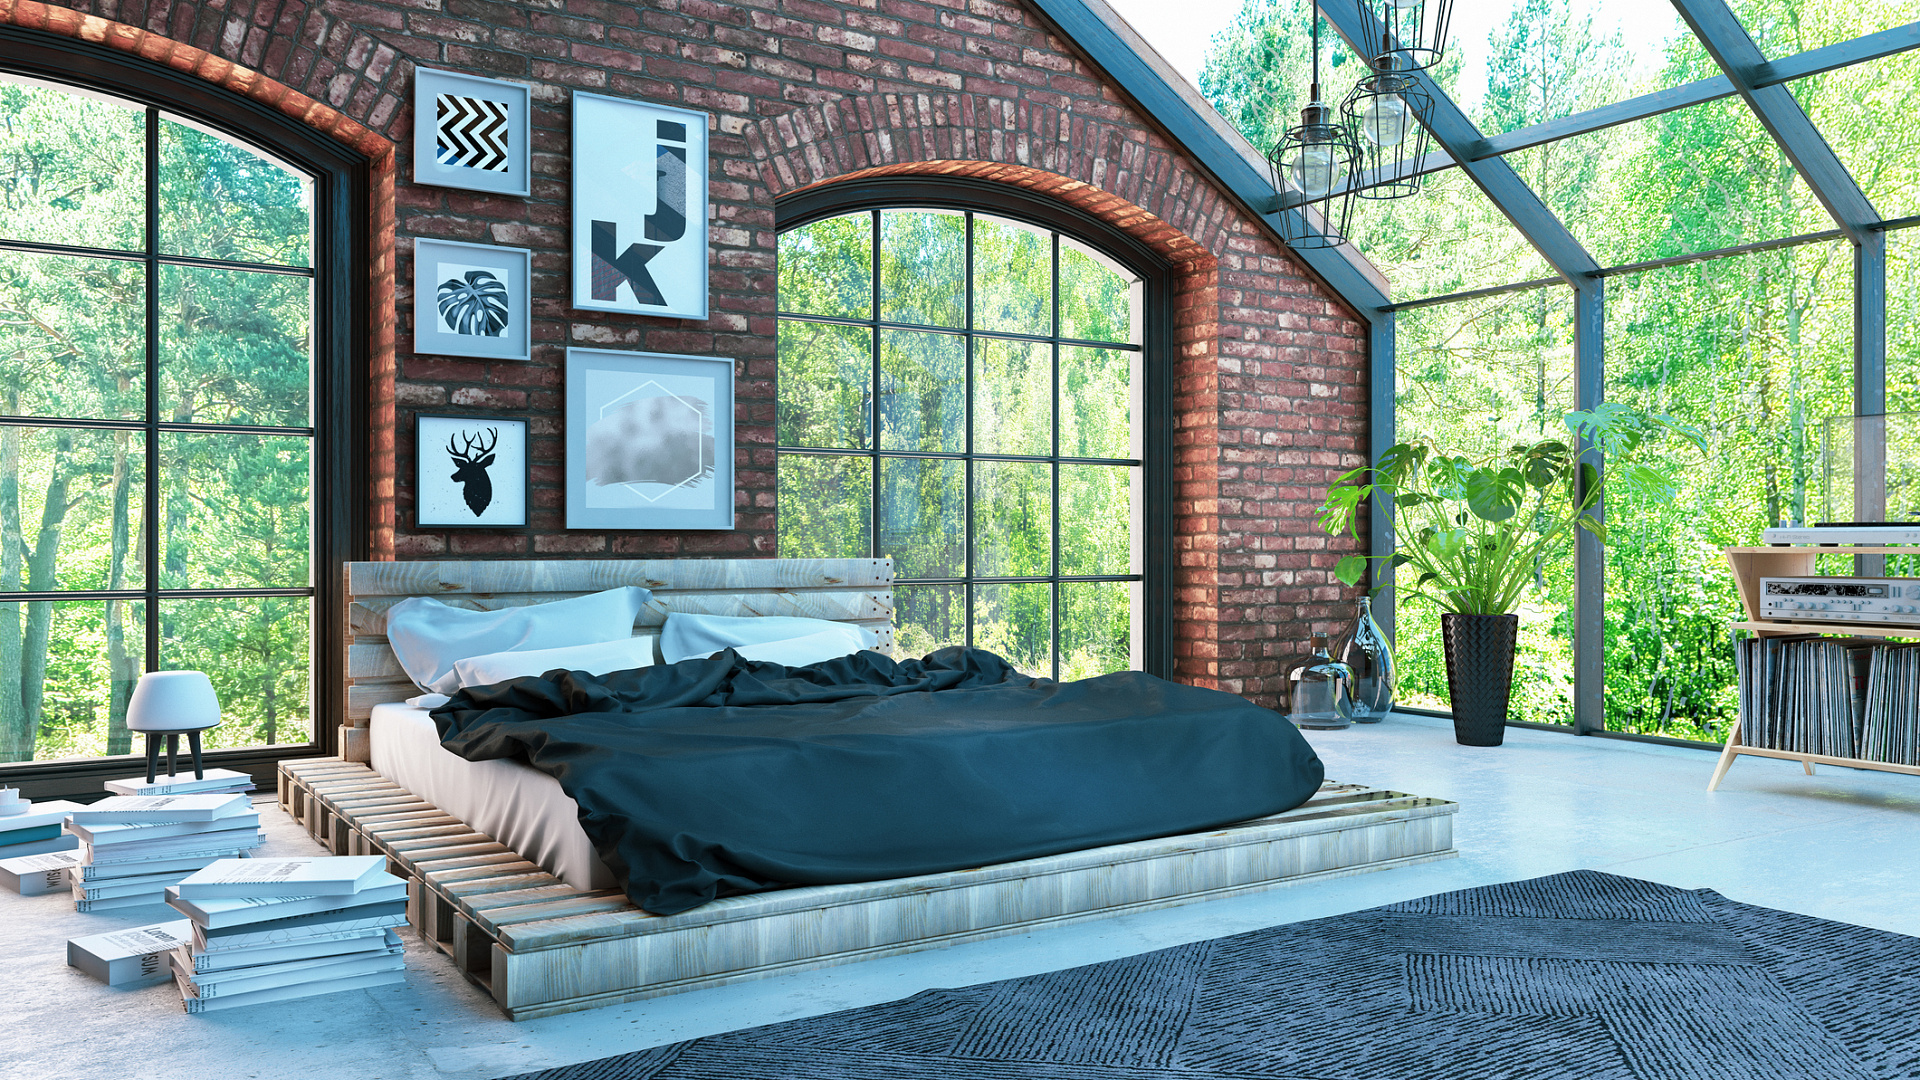 Sypialnia loft - inspiracje. Jak urządzić sypialnię w stylu industrialnym?